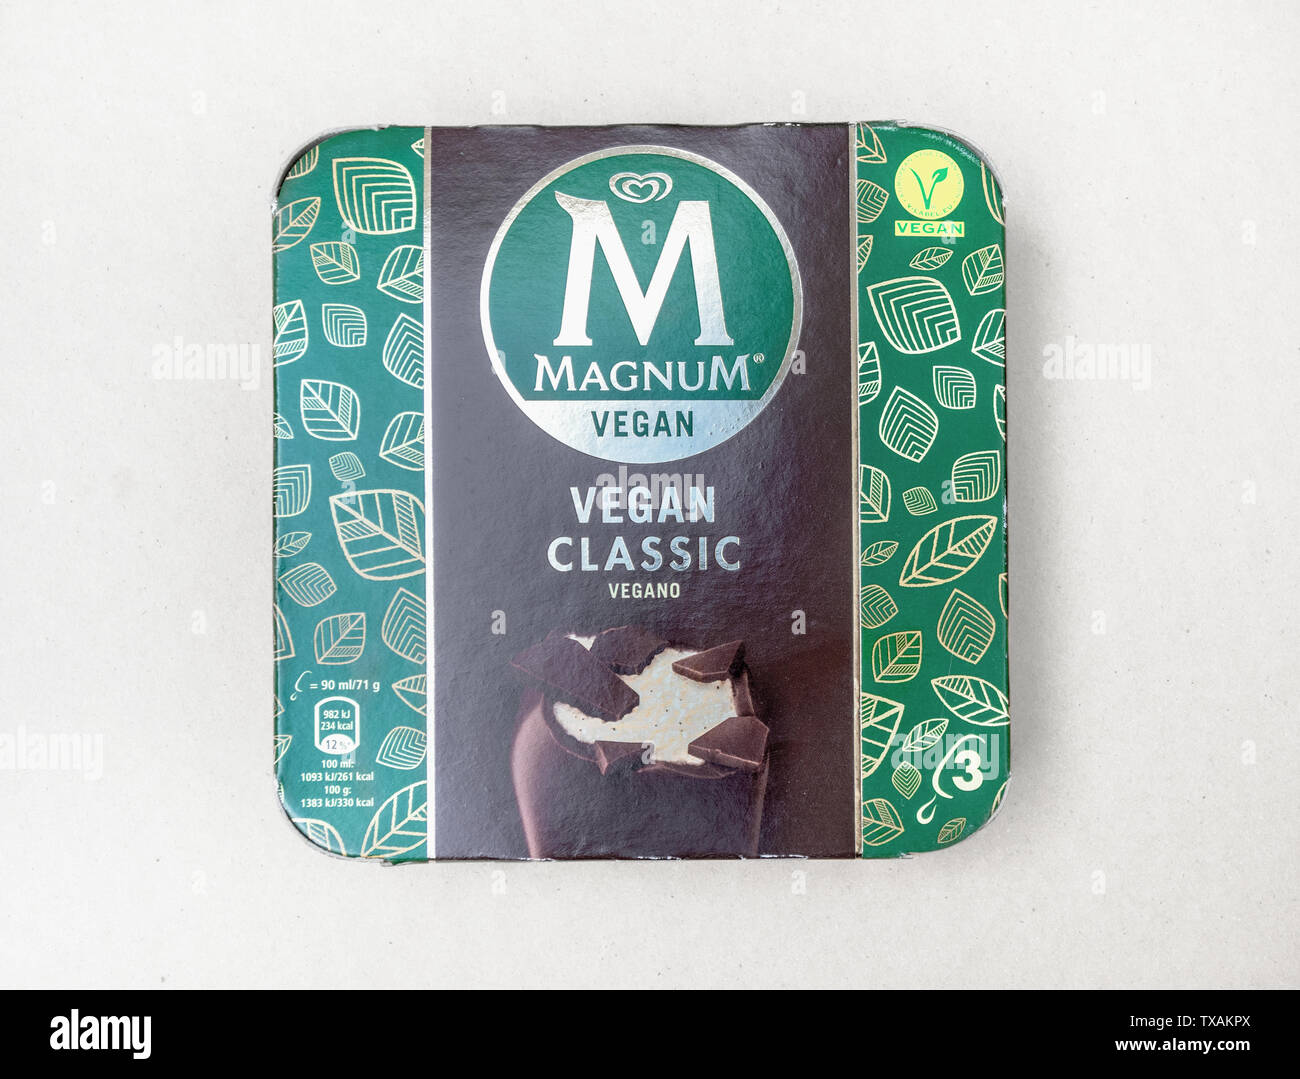 London/Großbritannien - 15. Juni 2019 - Vegane magnum Eis am Stiel, 3er-Pack ohne Milchprodukte klassische Eis mit Schokoladenüberzug Stockfoto